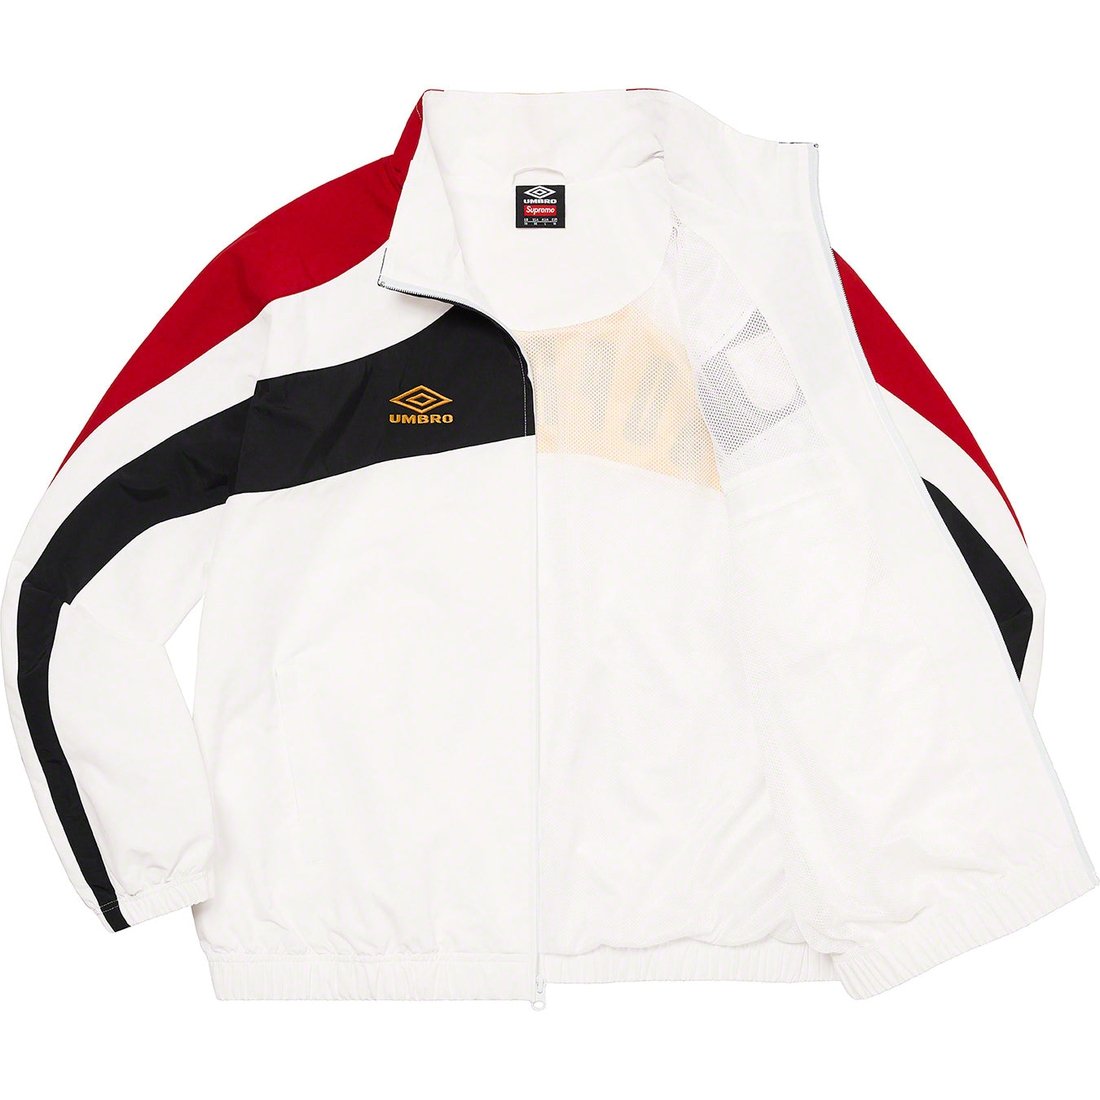 24,700円supreme umbro Track Jacket White